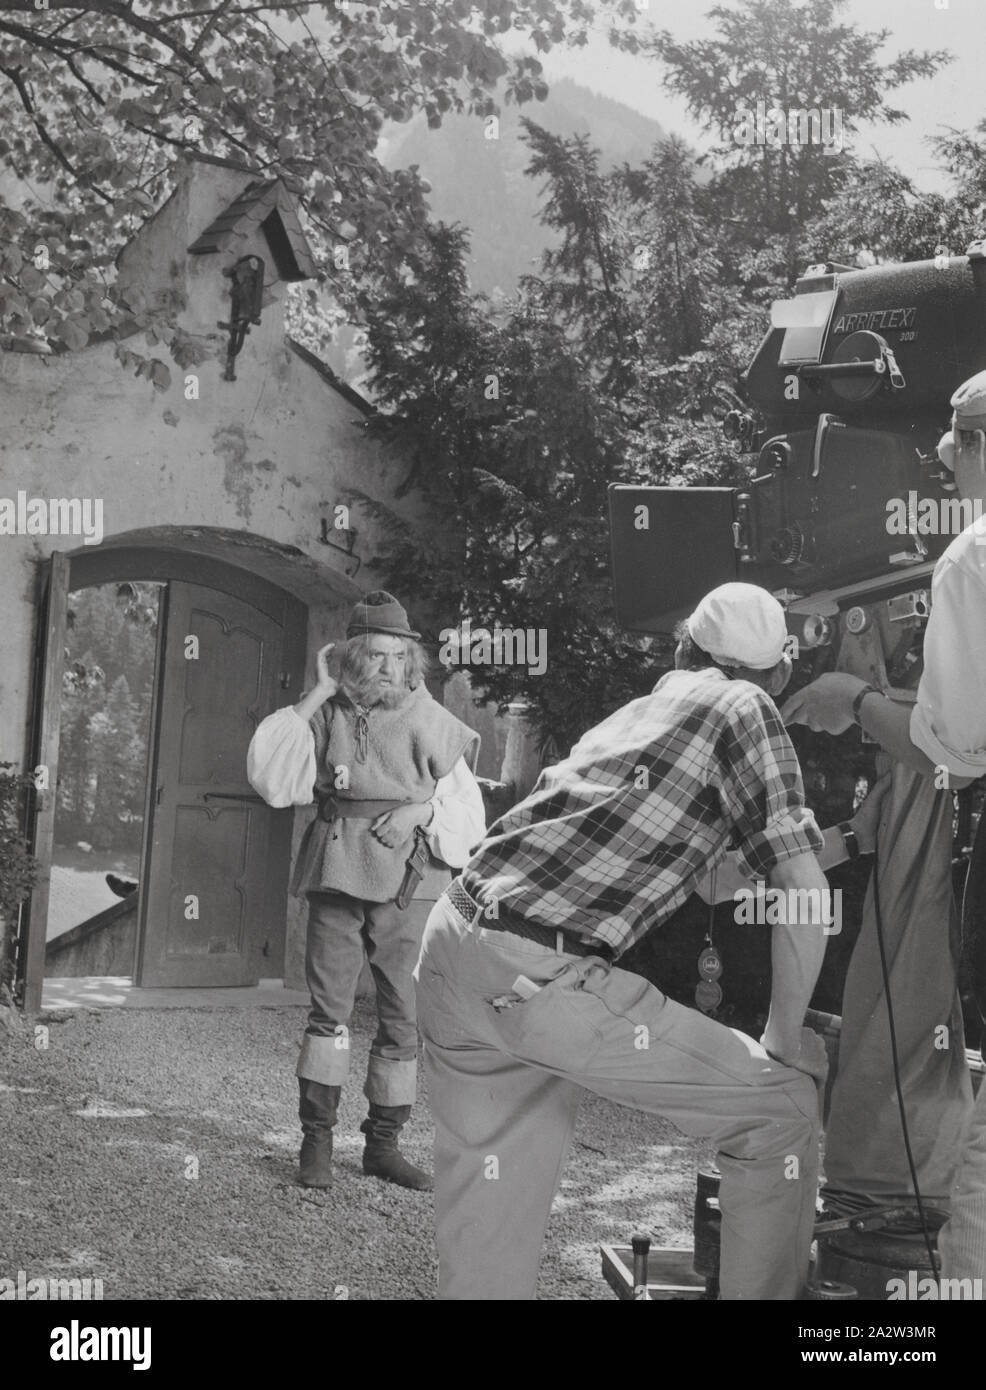 Weegee en función de un campesino de película, Munich, Desconocido,  fotógrafo, alrededor de 1960, gelatina de plata de impresión, 5 x 3-3/4 in  Fotografía de stock - Alamy